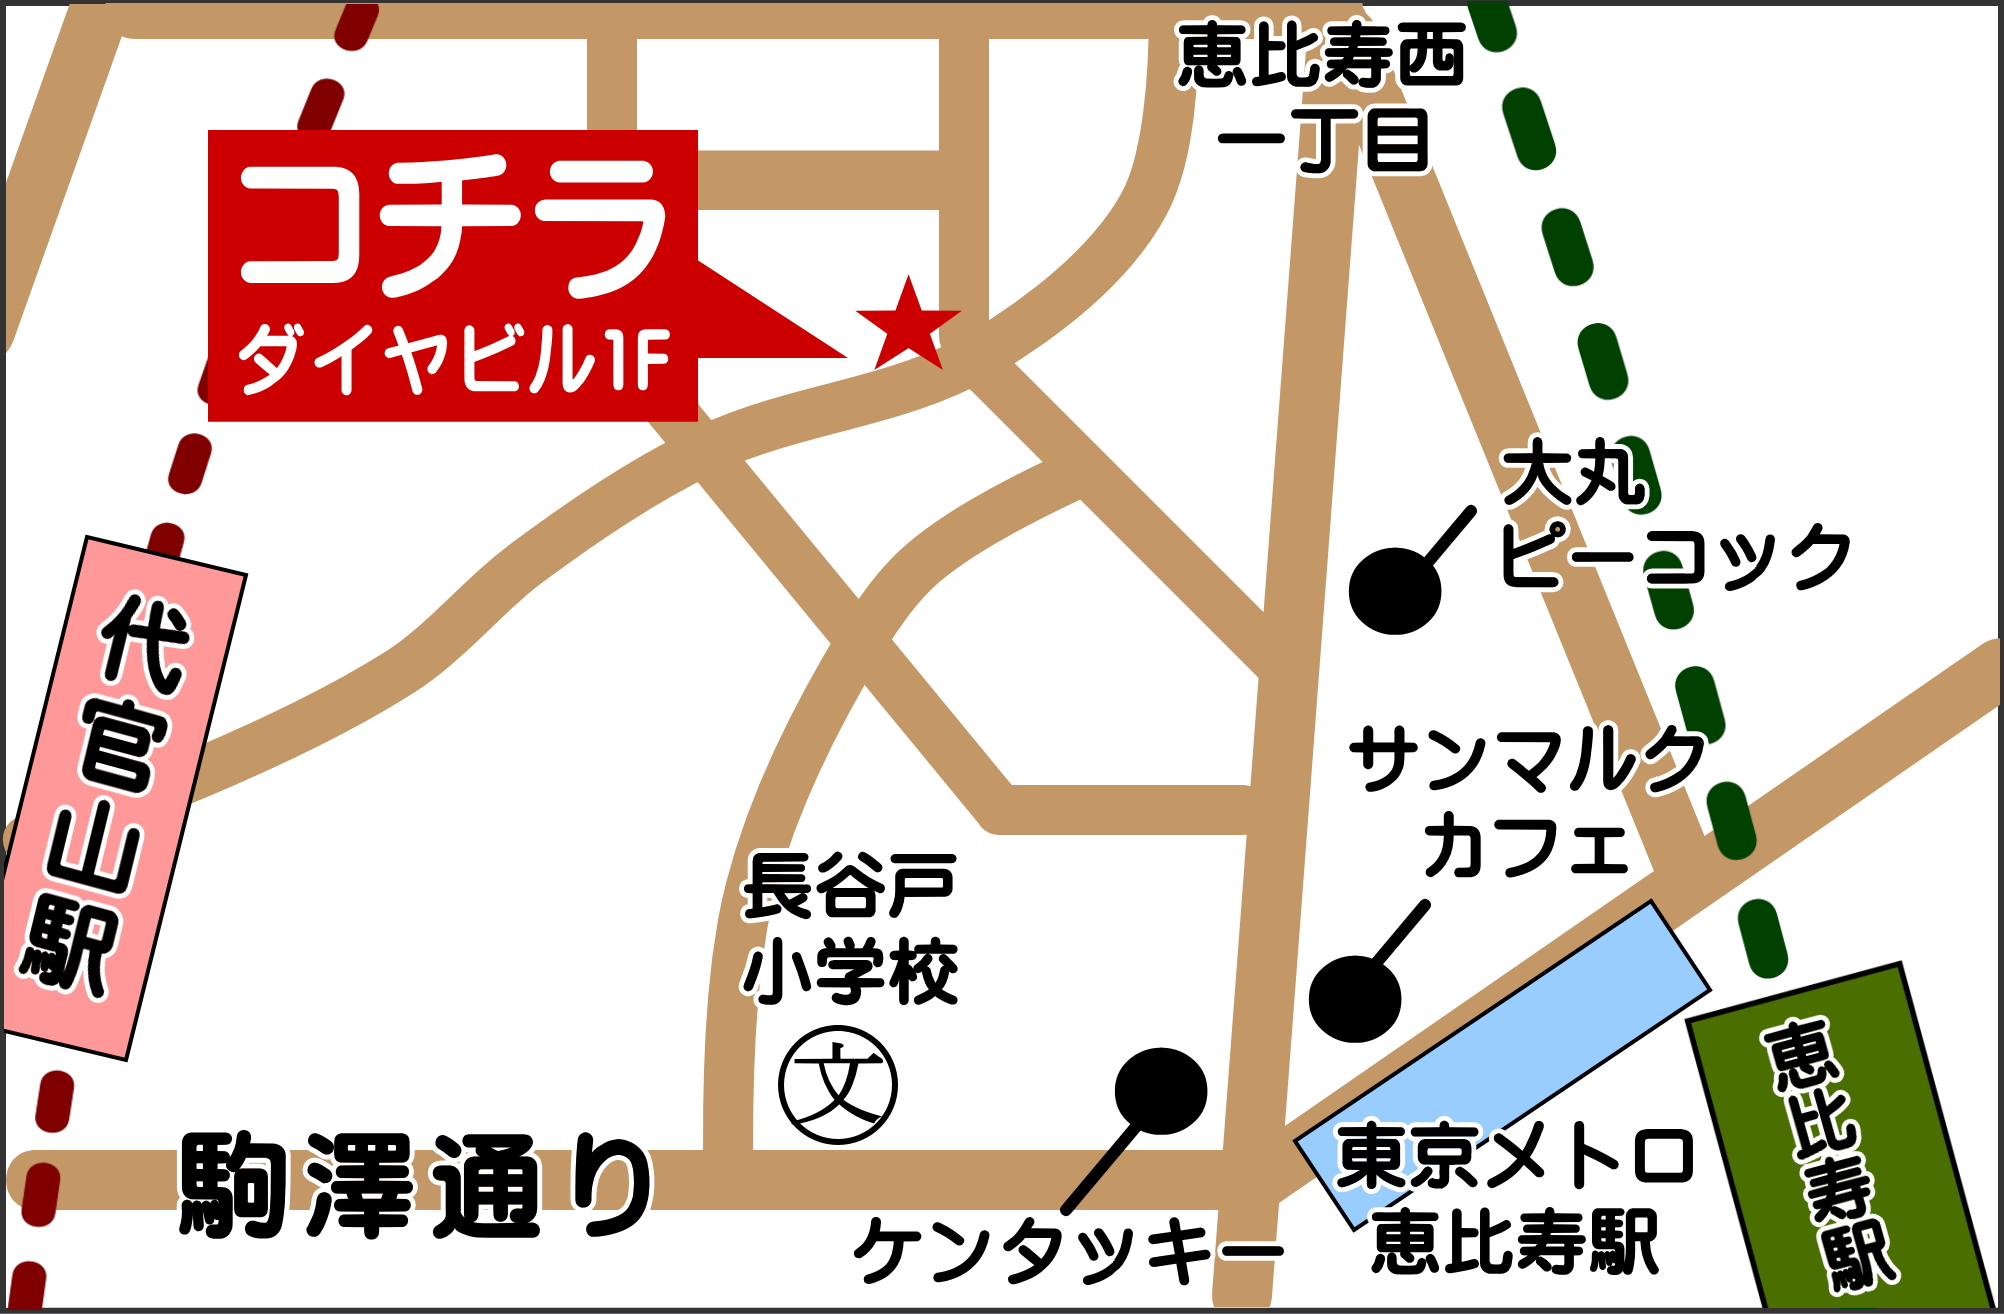 ハイクオリティ天然石専門店エムズ恵比寿店のマップ(地図、アクセス方法)